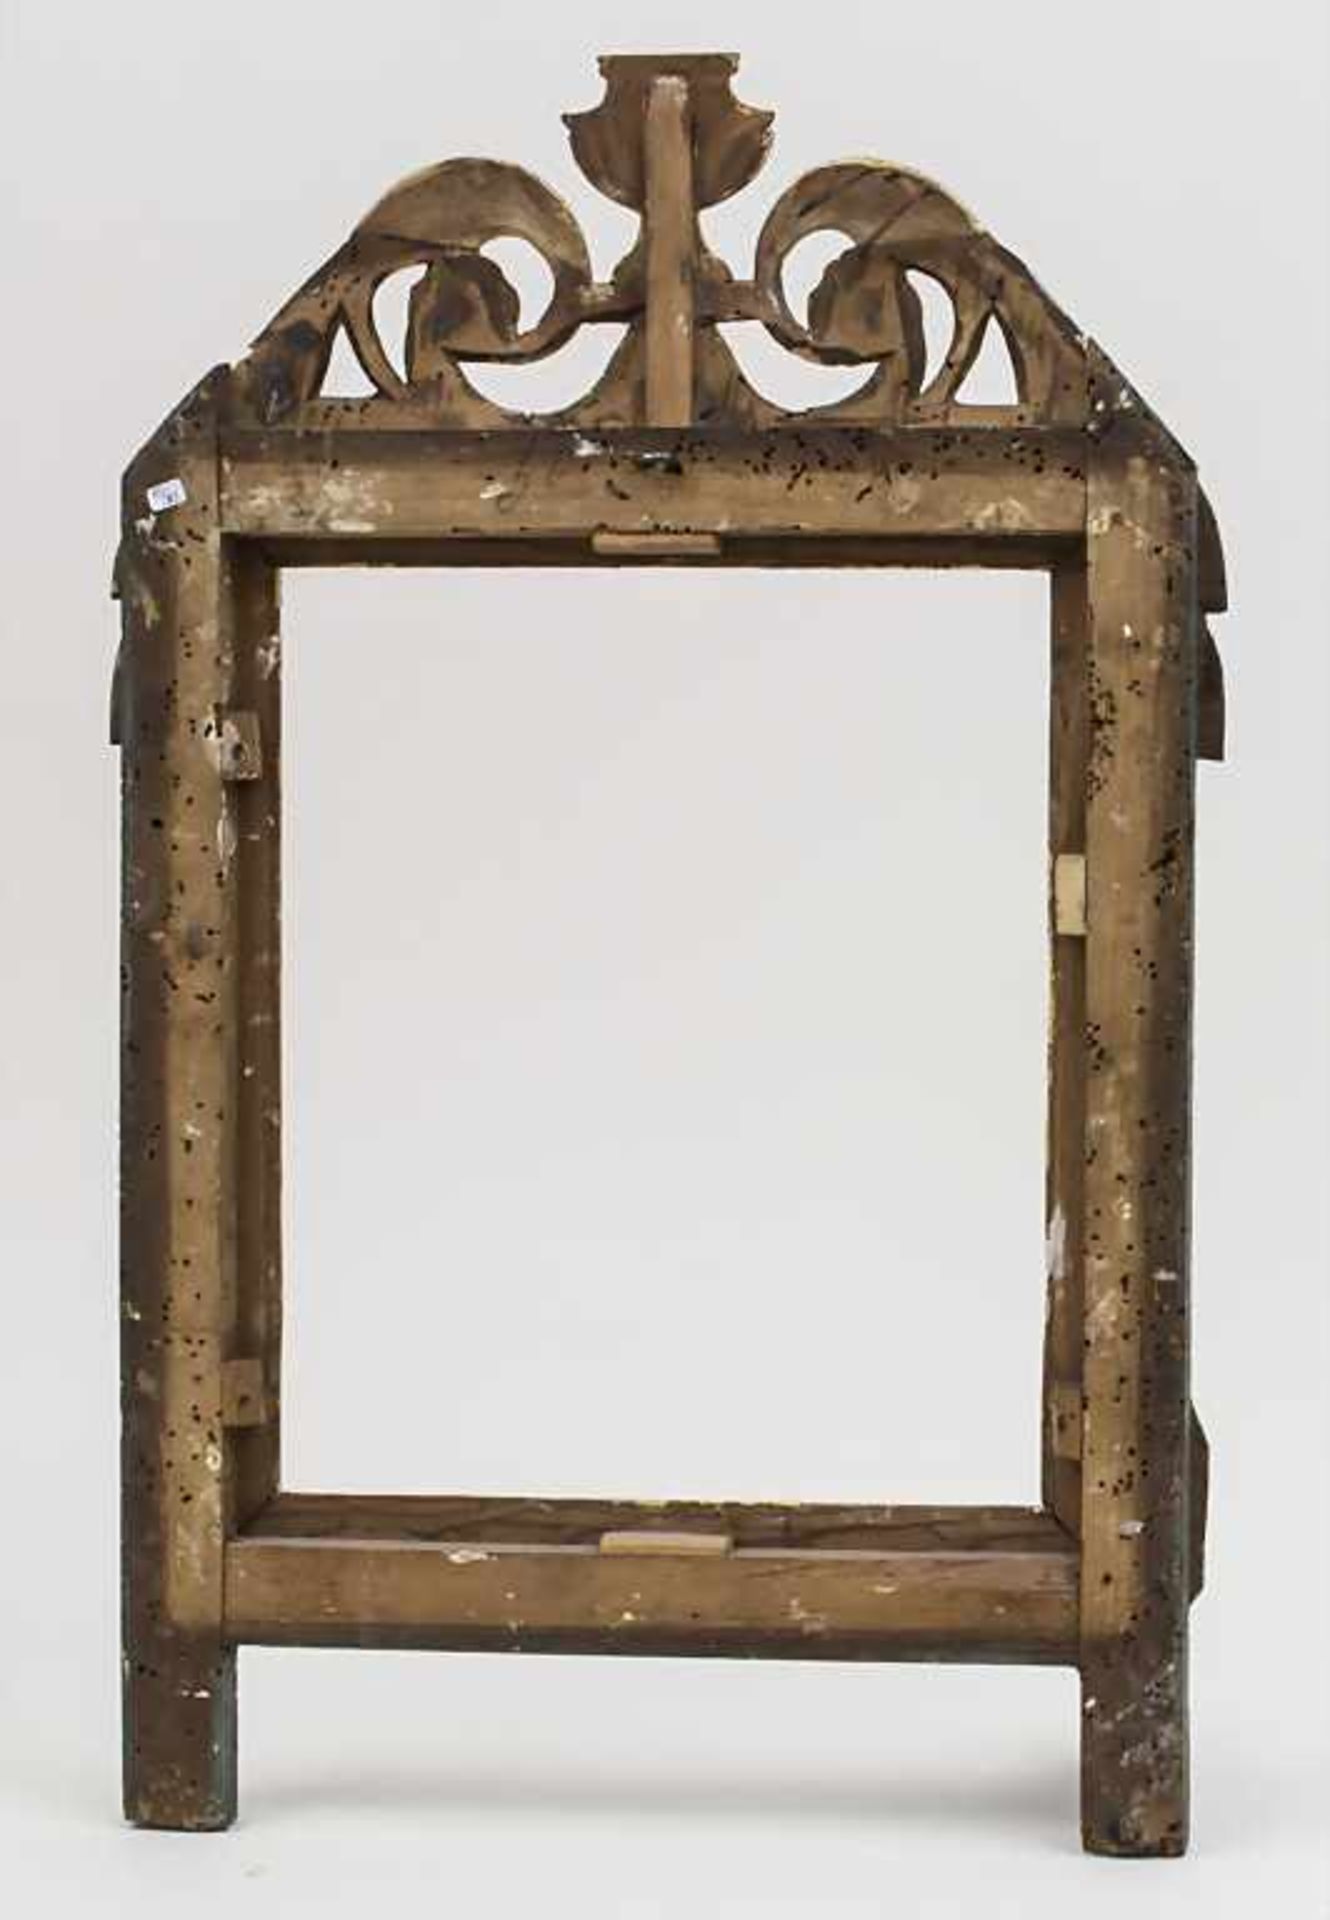 Rahmen mit Vasendekor / A frame decorated with a vase, 18./19. Jh. Material: Holz, geschnitzt, - Bild 2 aus 2